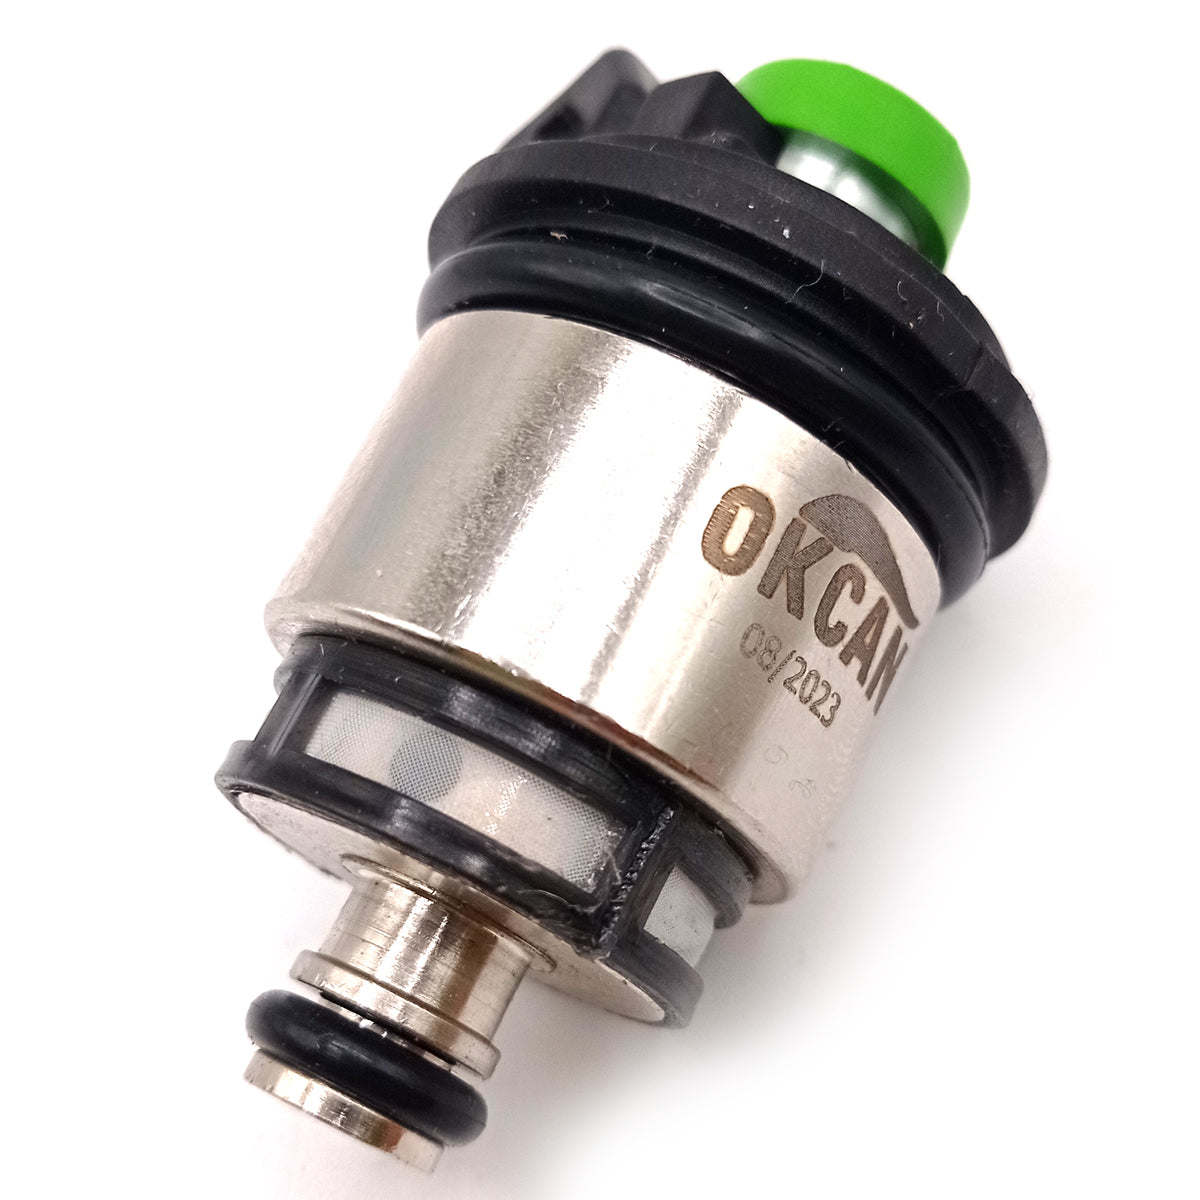 Okcan Injector for Landi Renzo MED GI25-22 Green AMP / BOSCH